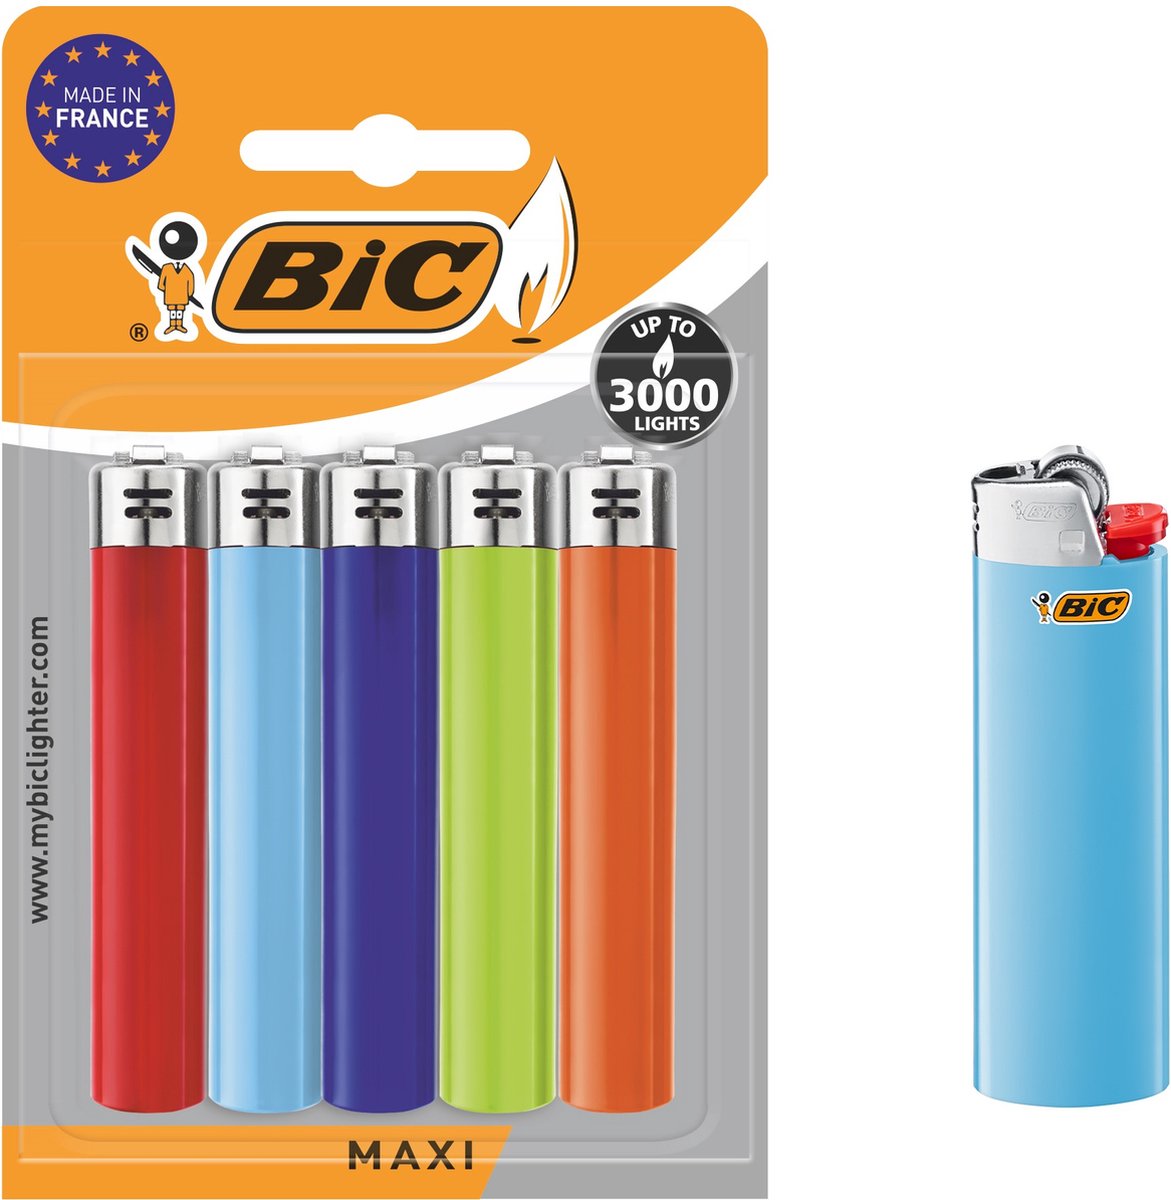 BIC J26 Maxi vuursteen flint aanstekers - diverse kleuren - Pak van 5 gasaanstekers - kindveilig - BIC